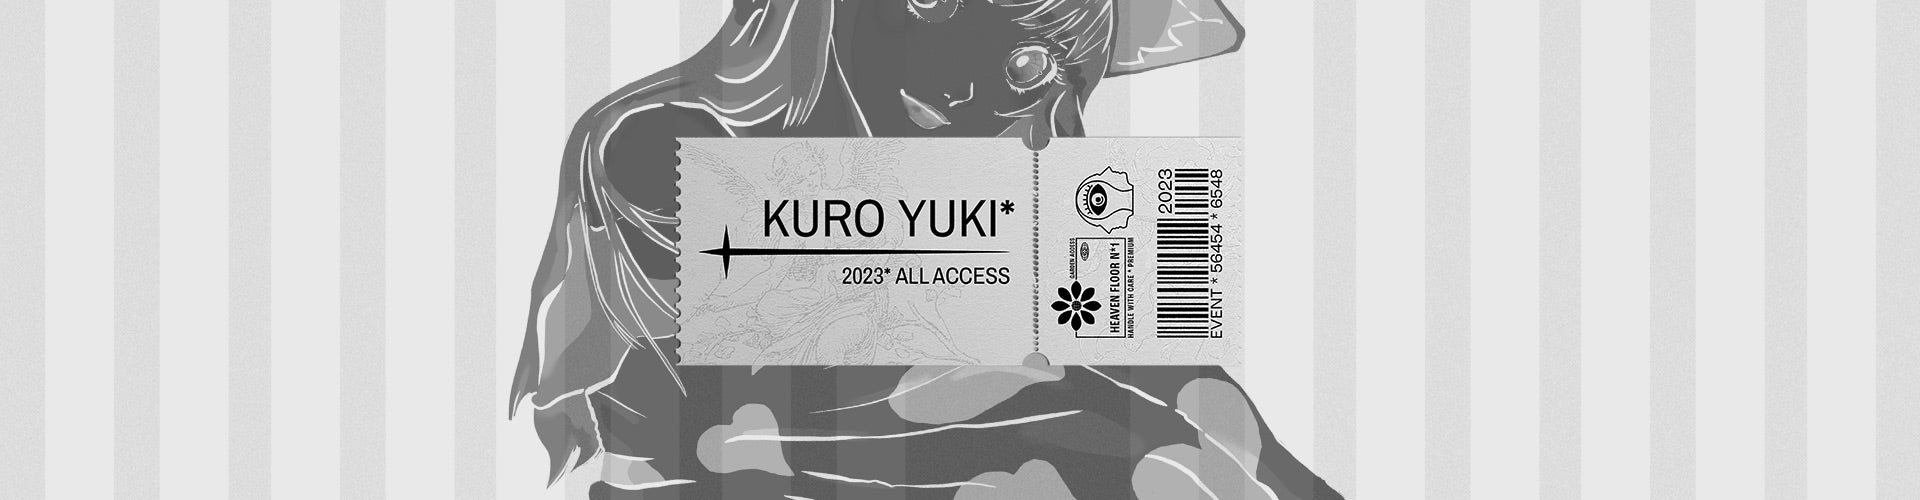 Kuro Yuki * Prints